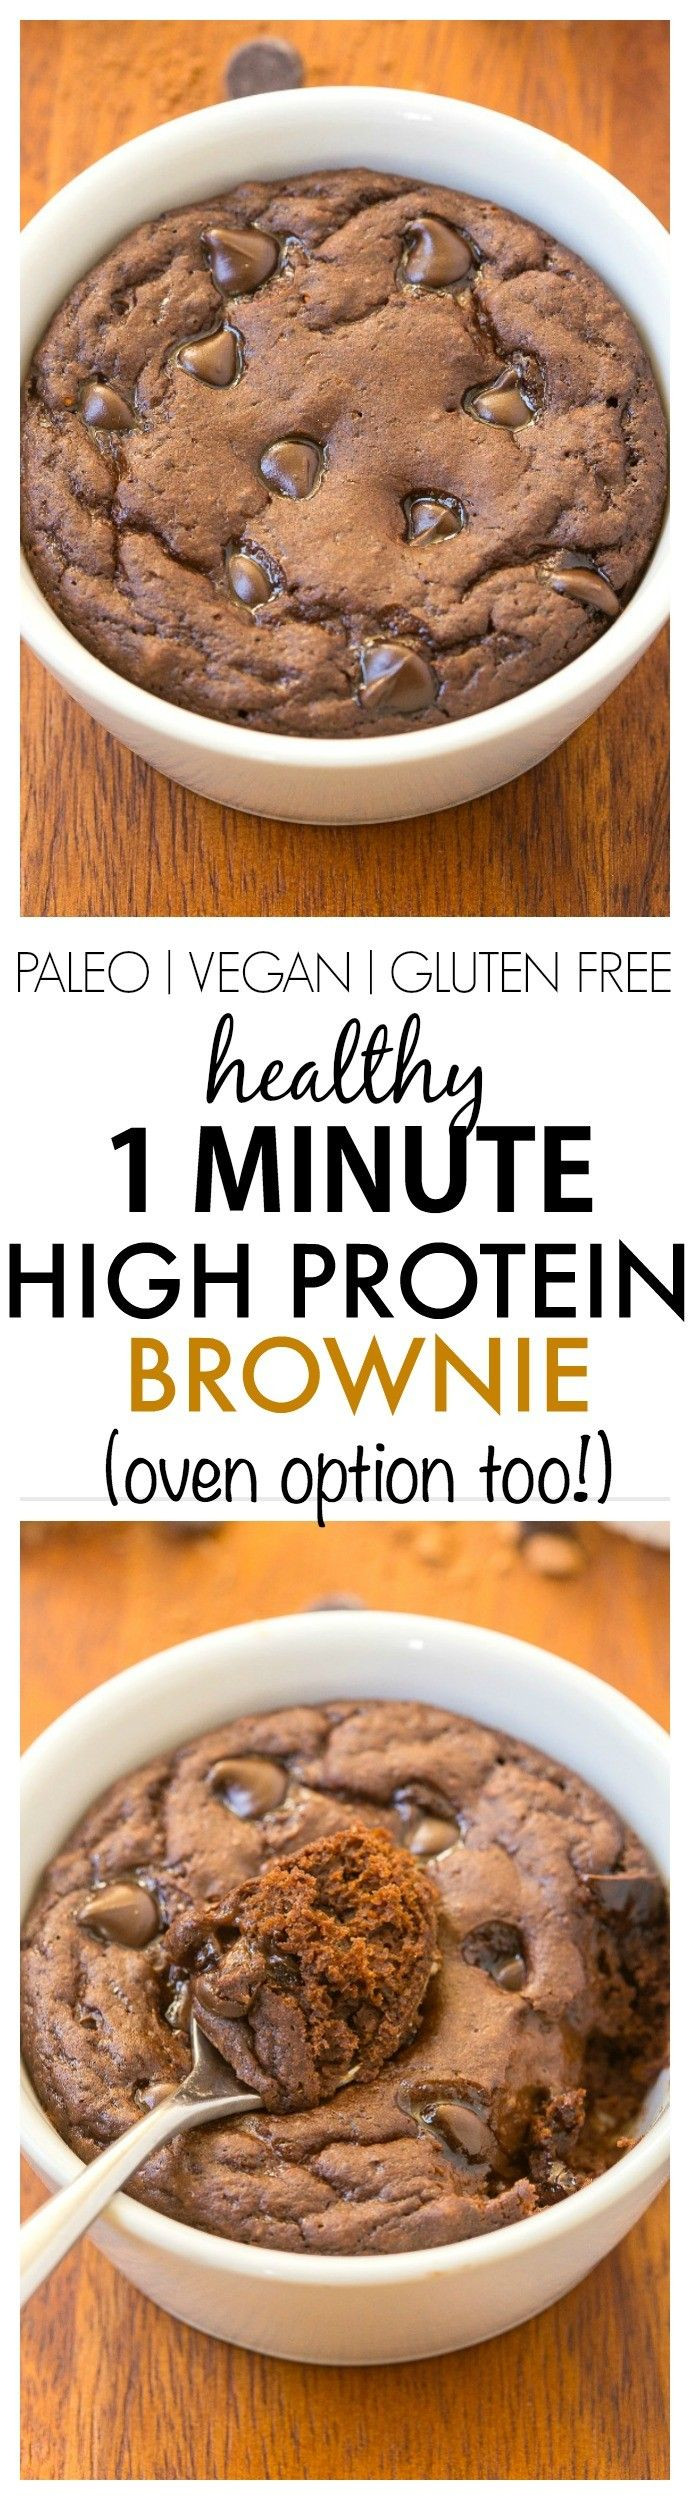 Protein Desserts Recipe
 Best 25 Protein brownies ideas on Pinterest